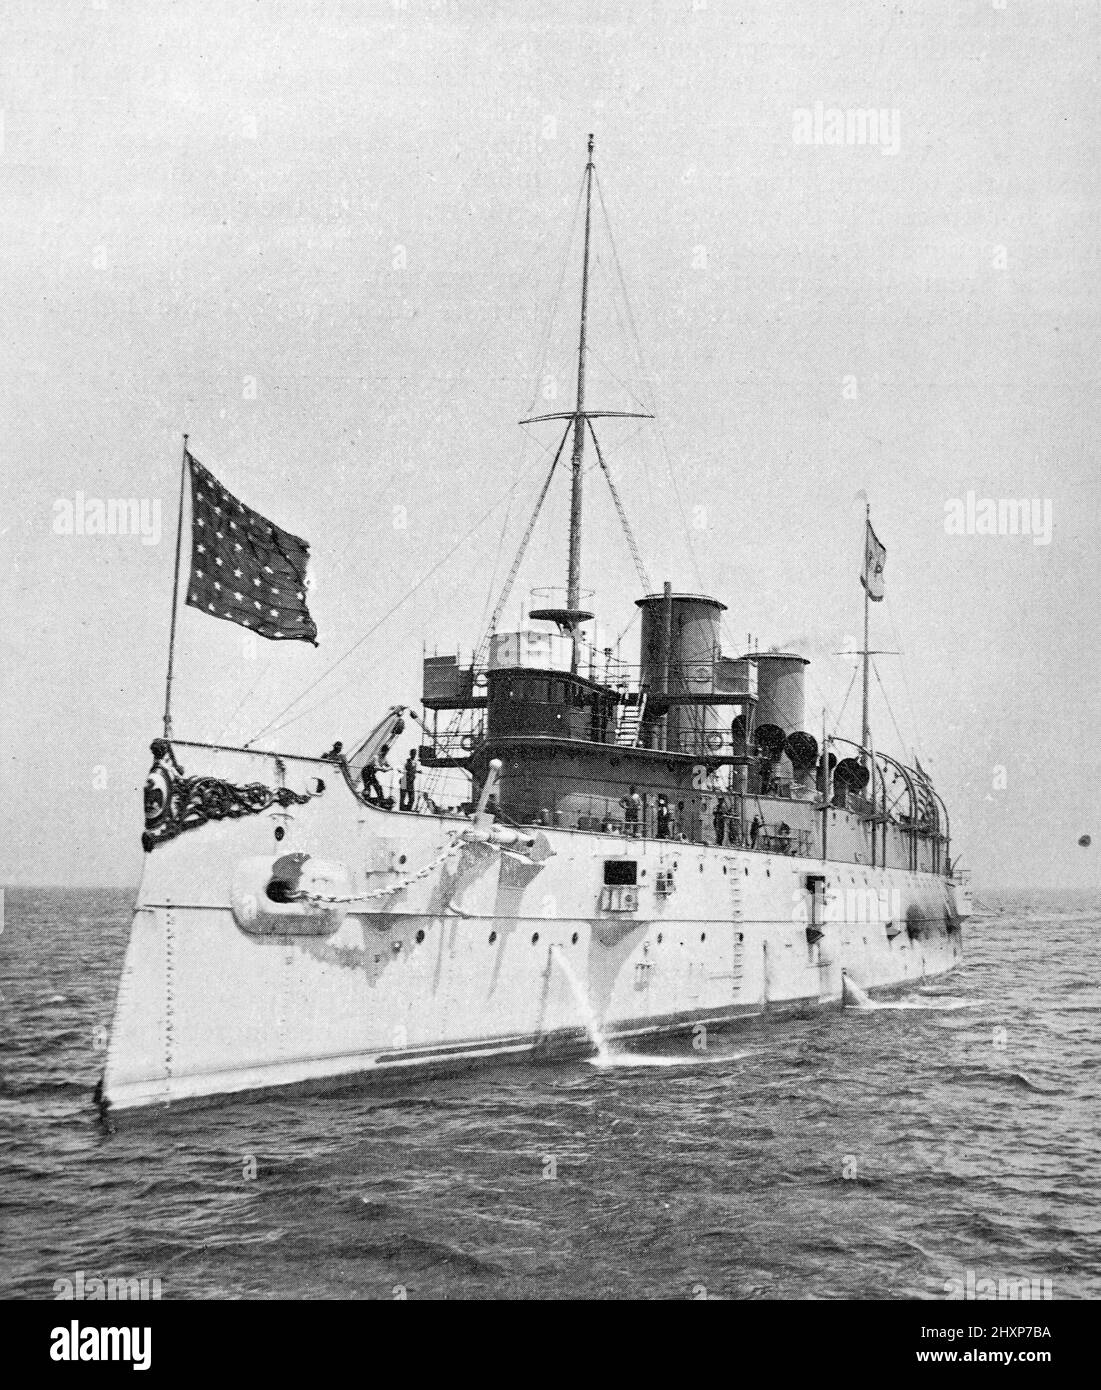 El crucero protegido, USS Minneapolis. Fotografía en blanco y negro tomada alrededor de 1890s Foto de stock